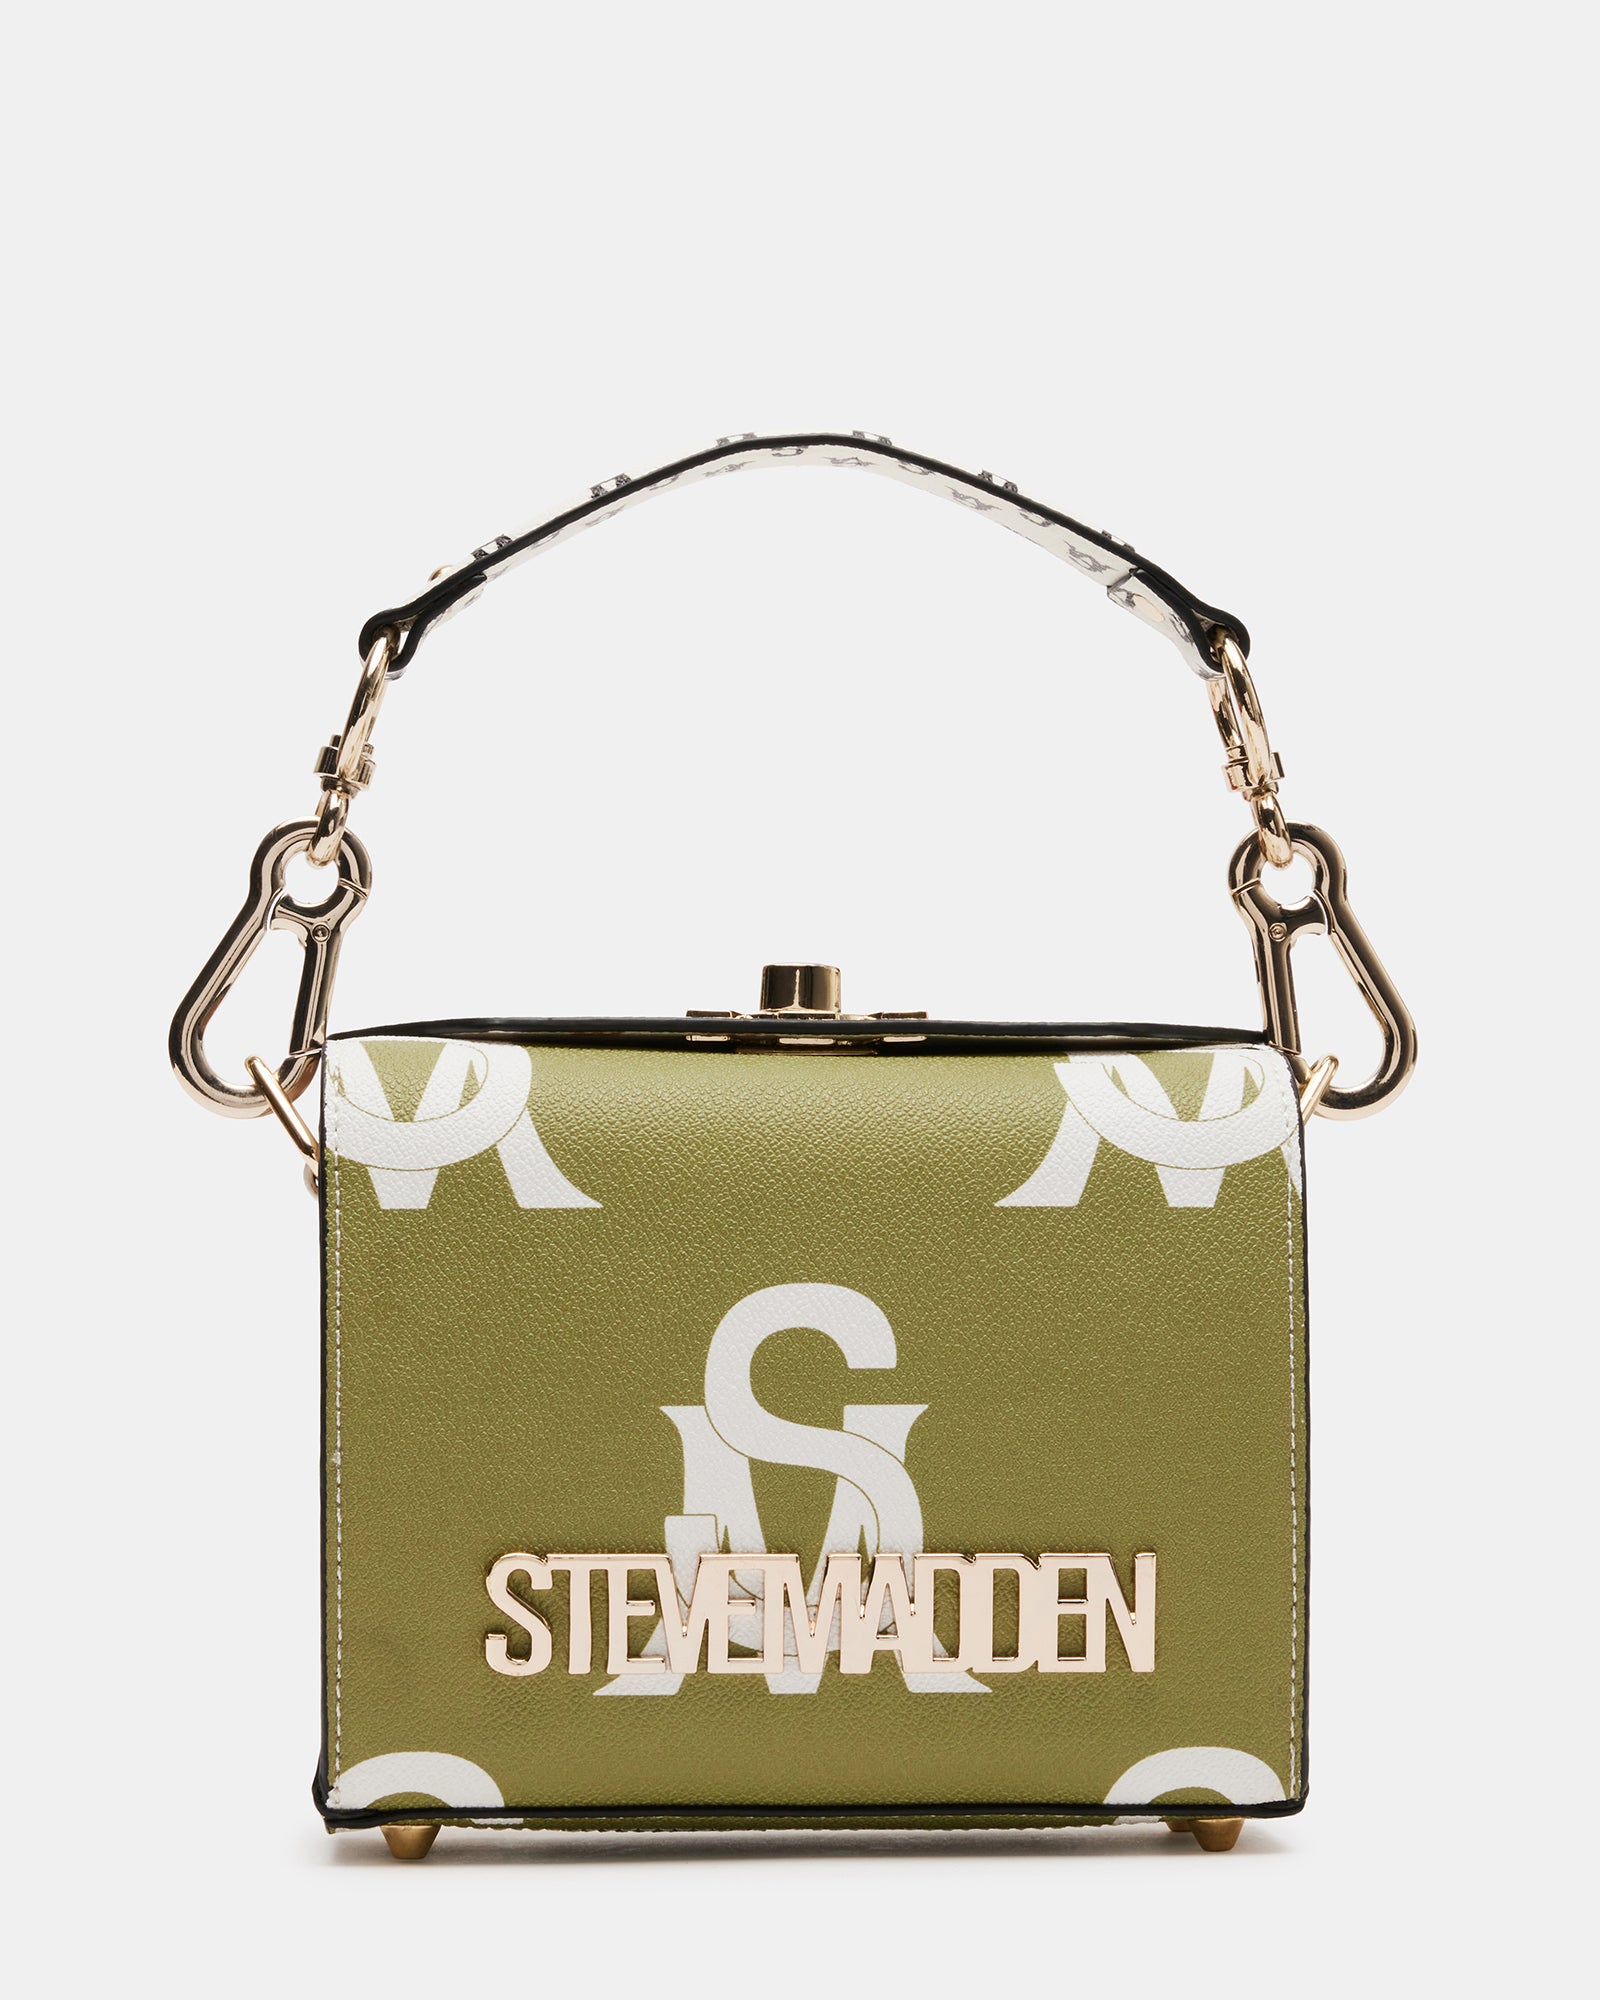 Steve Madden Credit Card Shoulder Bags for Women